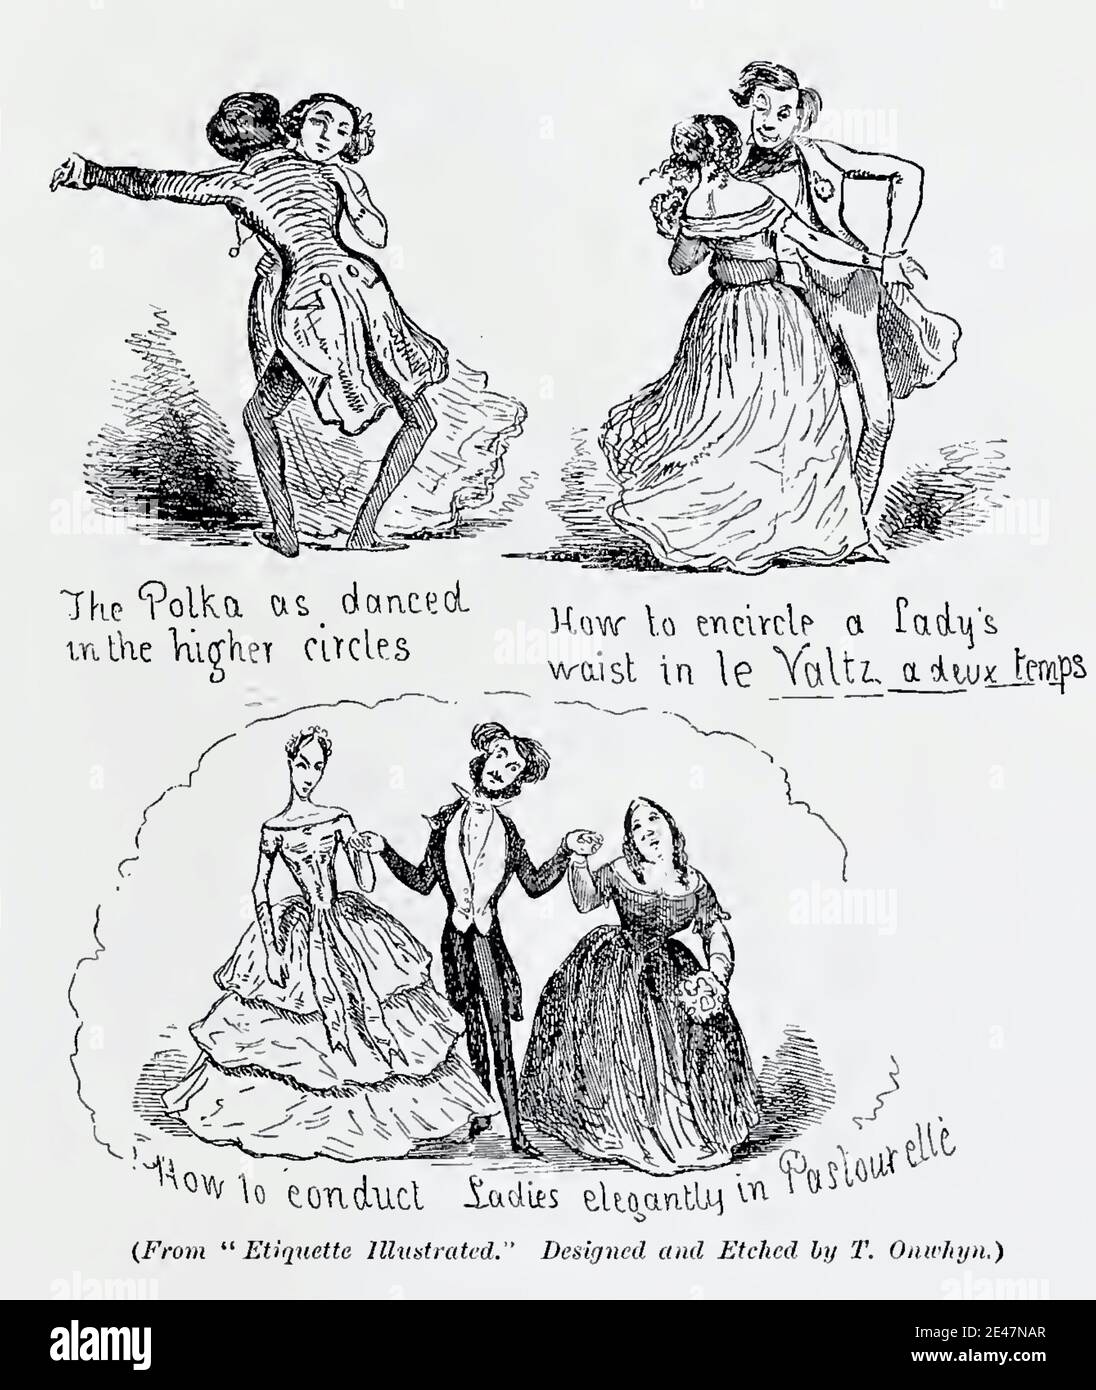 Illustration satirique antique vintage intitulée étiquette illustrée par Thomas Onwhyn de 1896. Un guide de gentleman pour l'étiquette sur la piste de danse. Banque D'Images